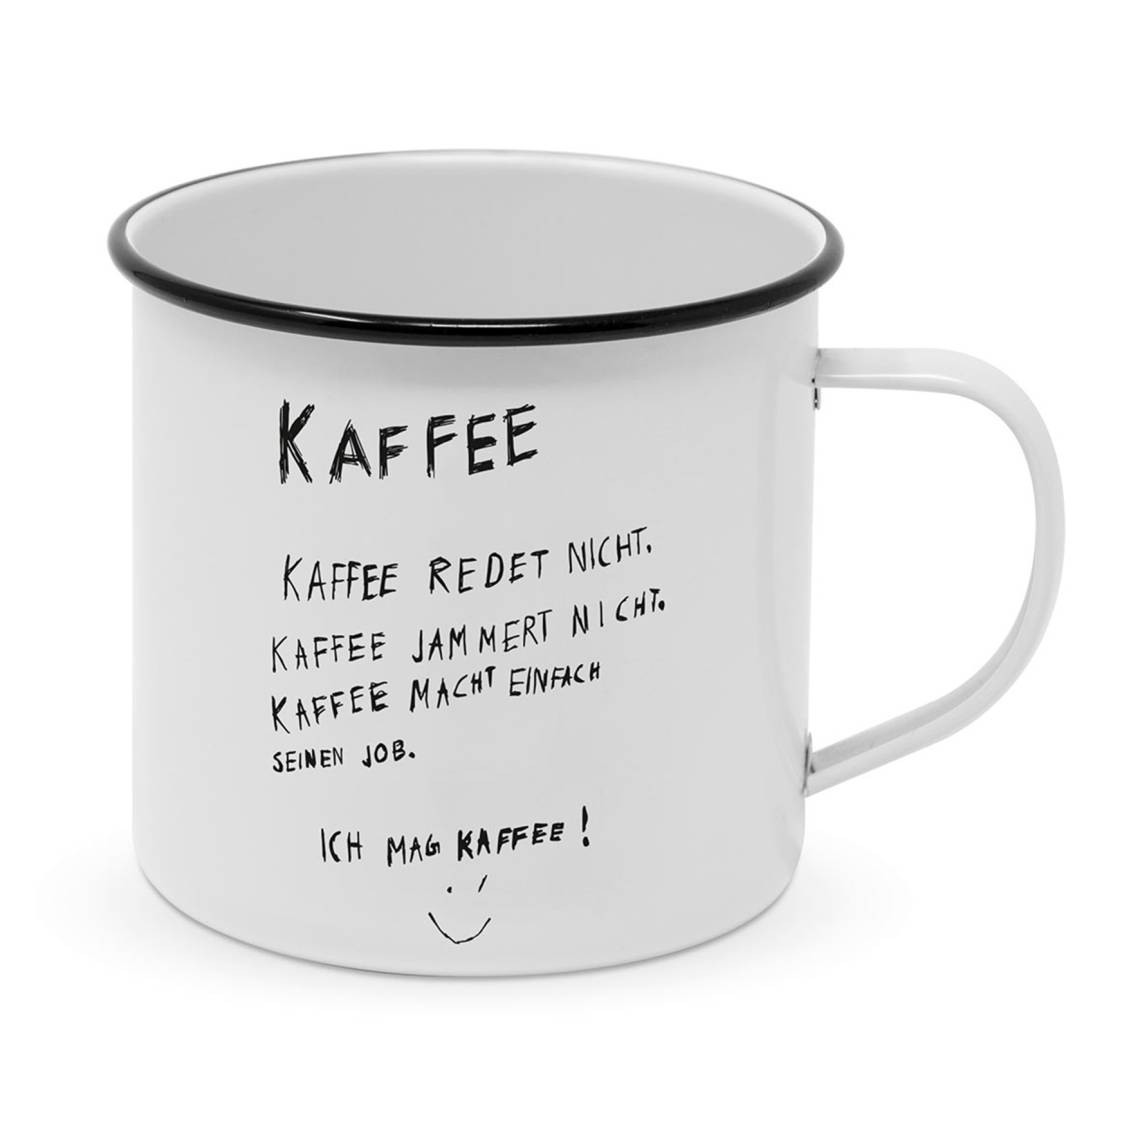 ppd - Formart - Kaffee redet nicht Mug aus Metall